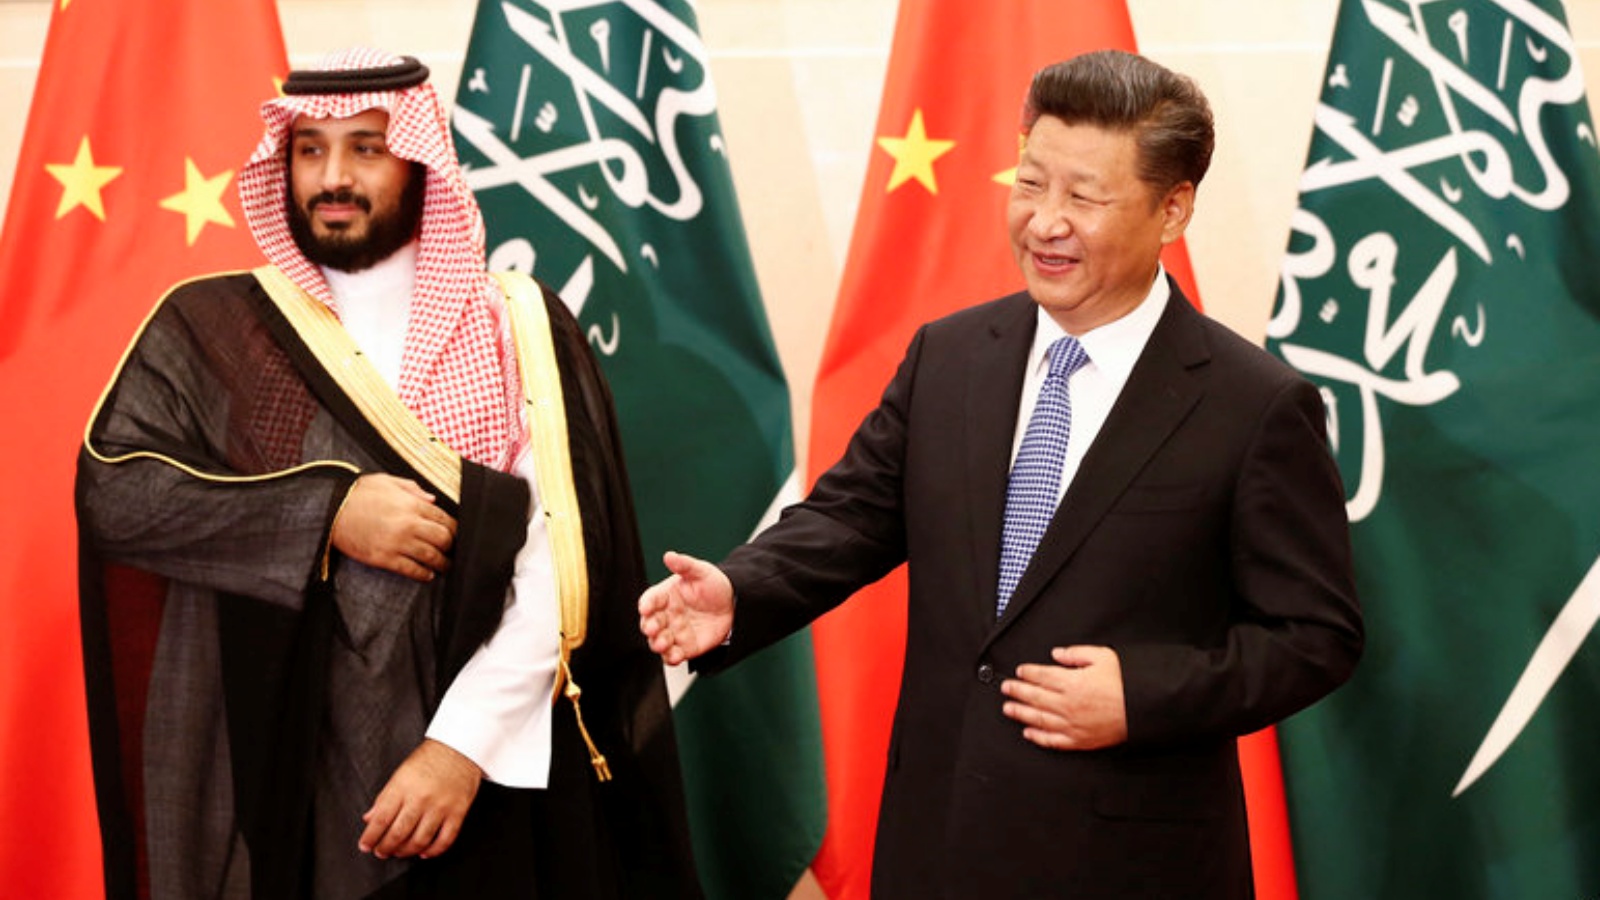 ولي العهد السعودي محمد بن سلمان والرئيس الصيني شي جين بينغ باجتماع خلال العام 2016